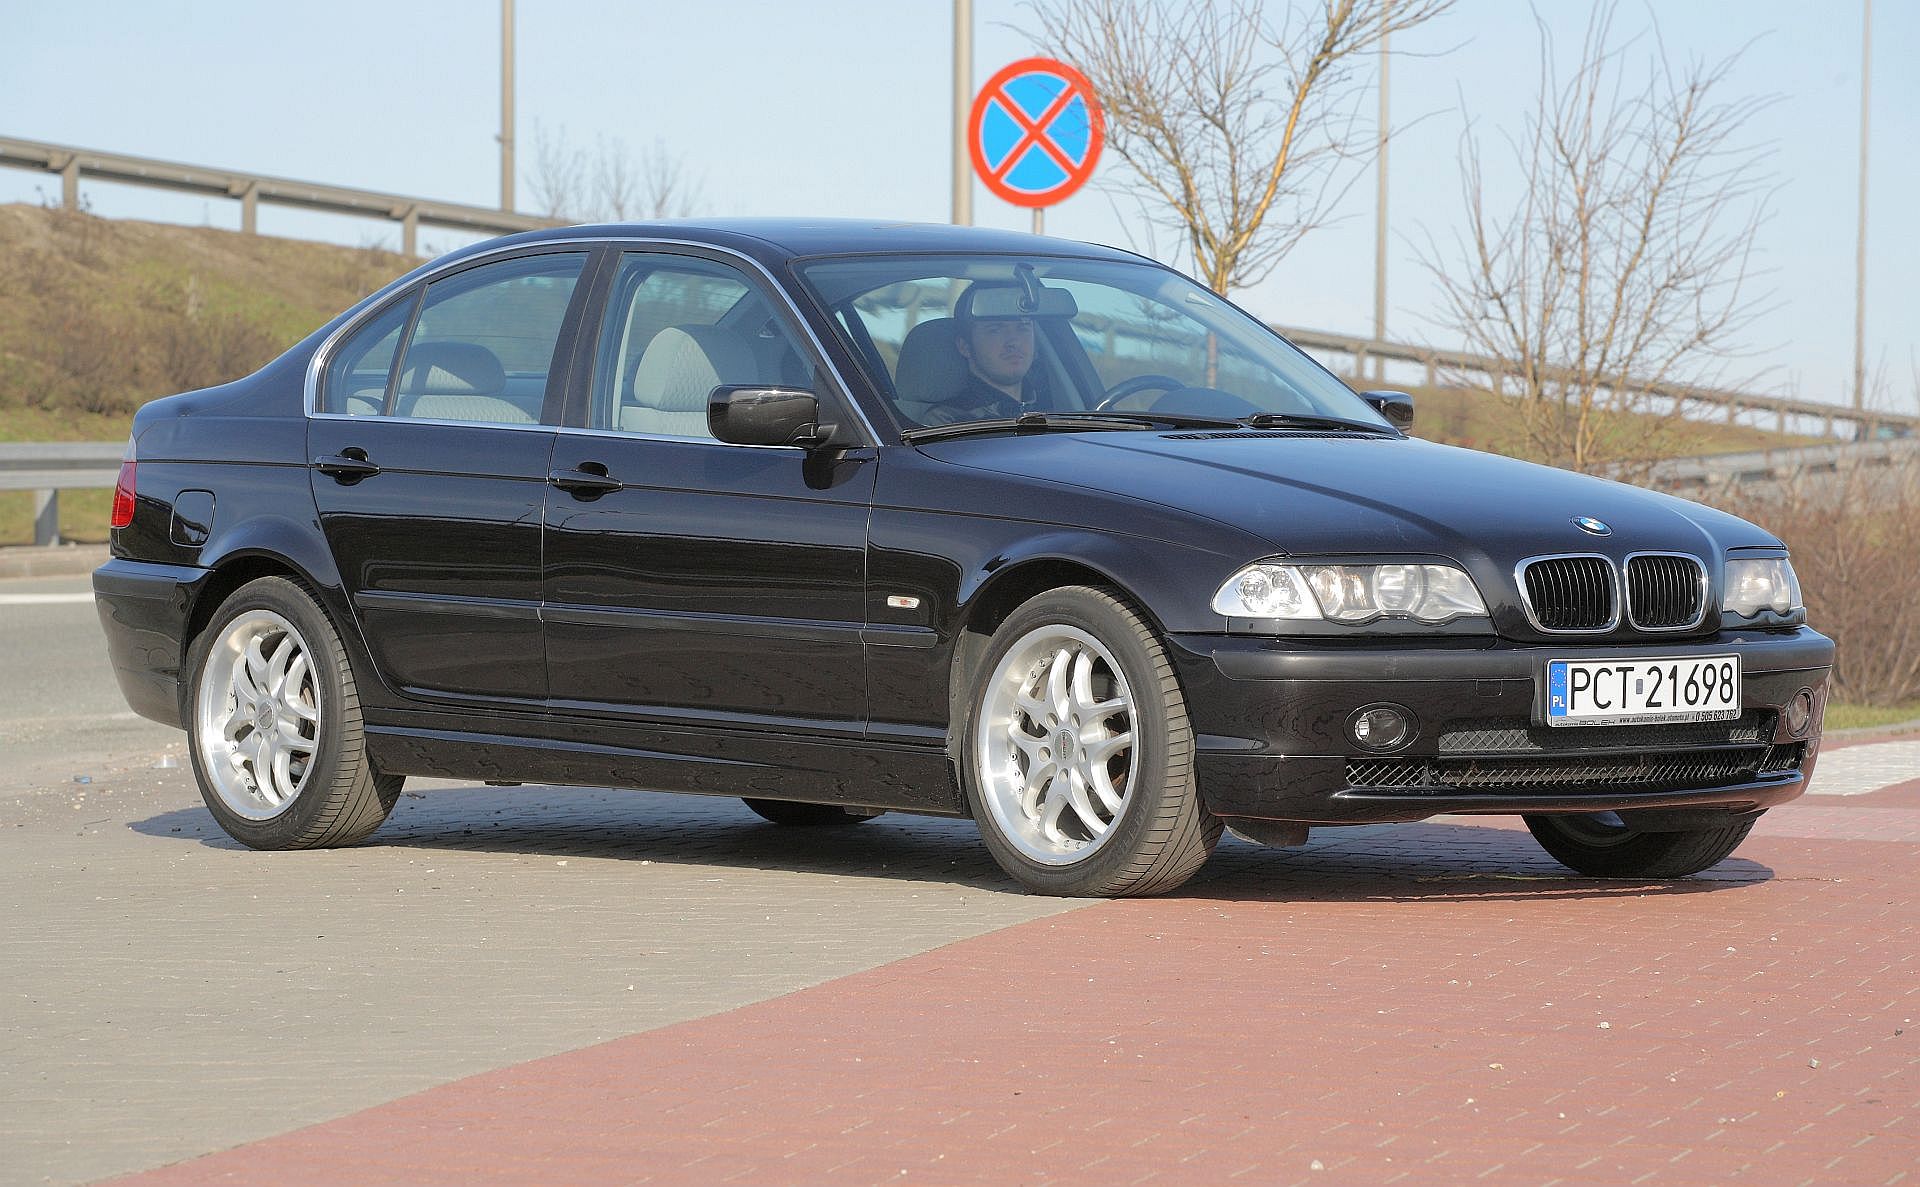 Żarówki BMW seria 3 (E46) jakie potrzebne do wymiany?